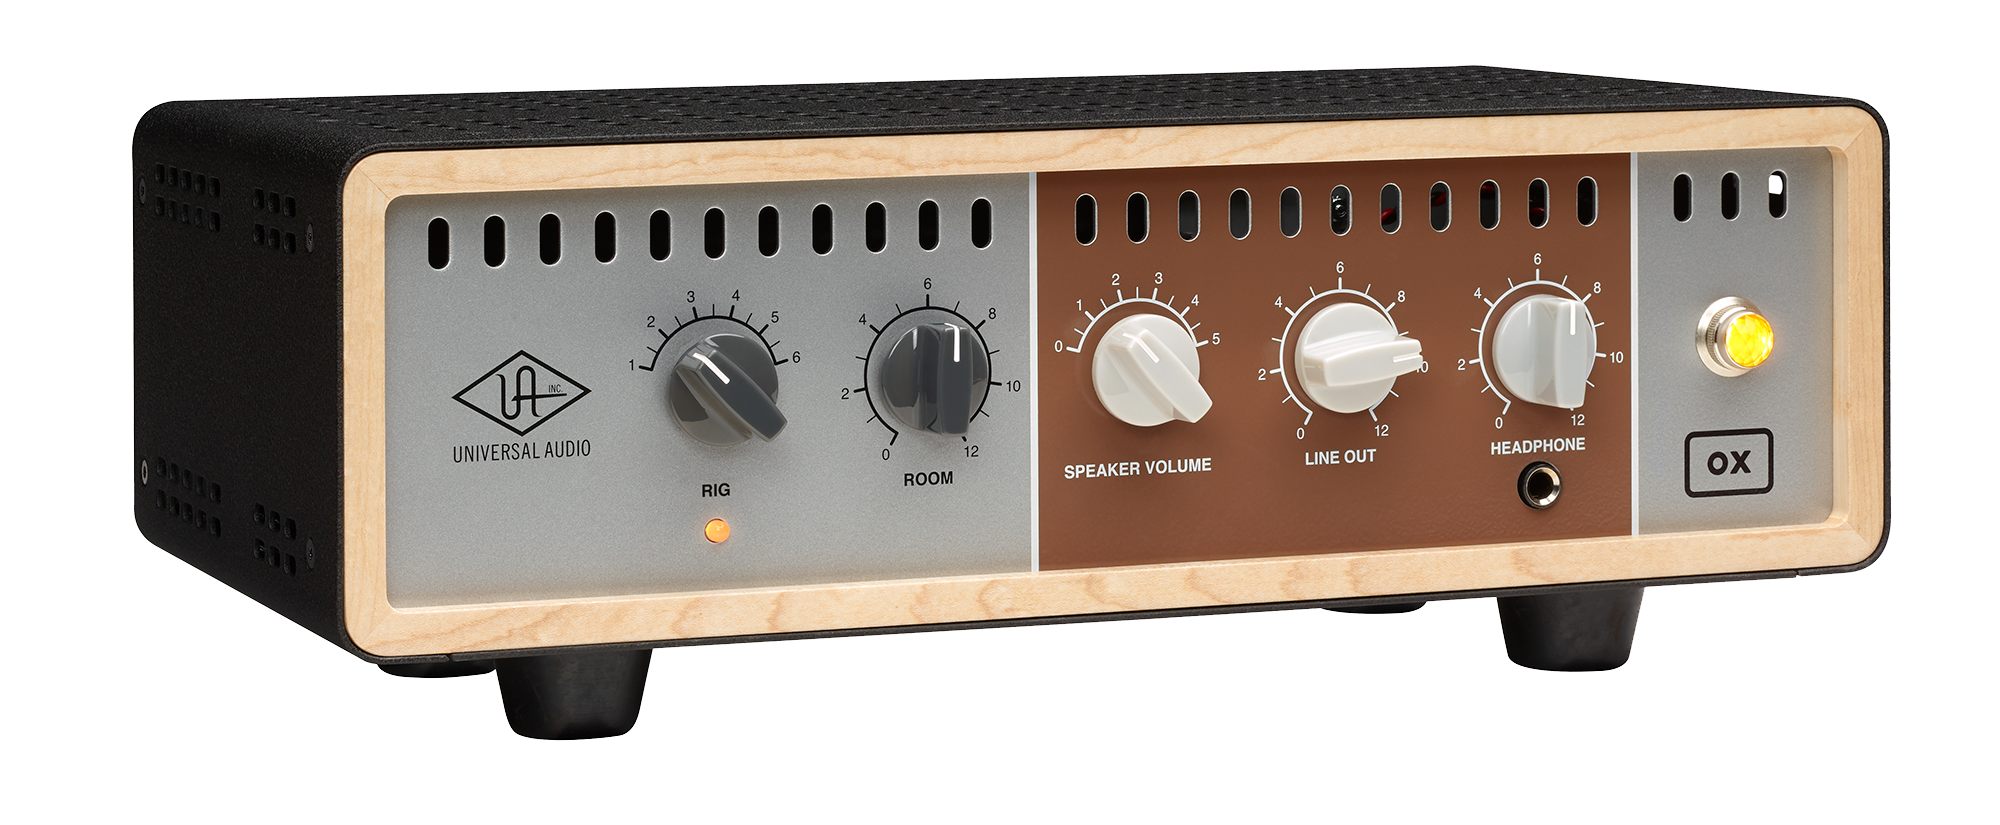 Universal Audio Ox Amp Top Box - Atenuador de potencia - Variation 2